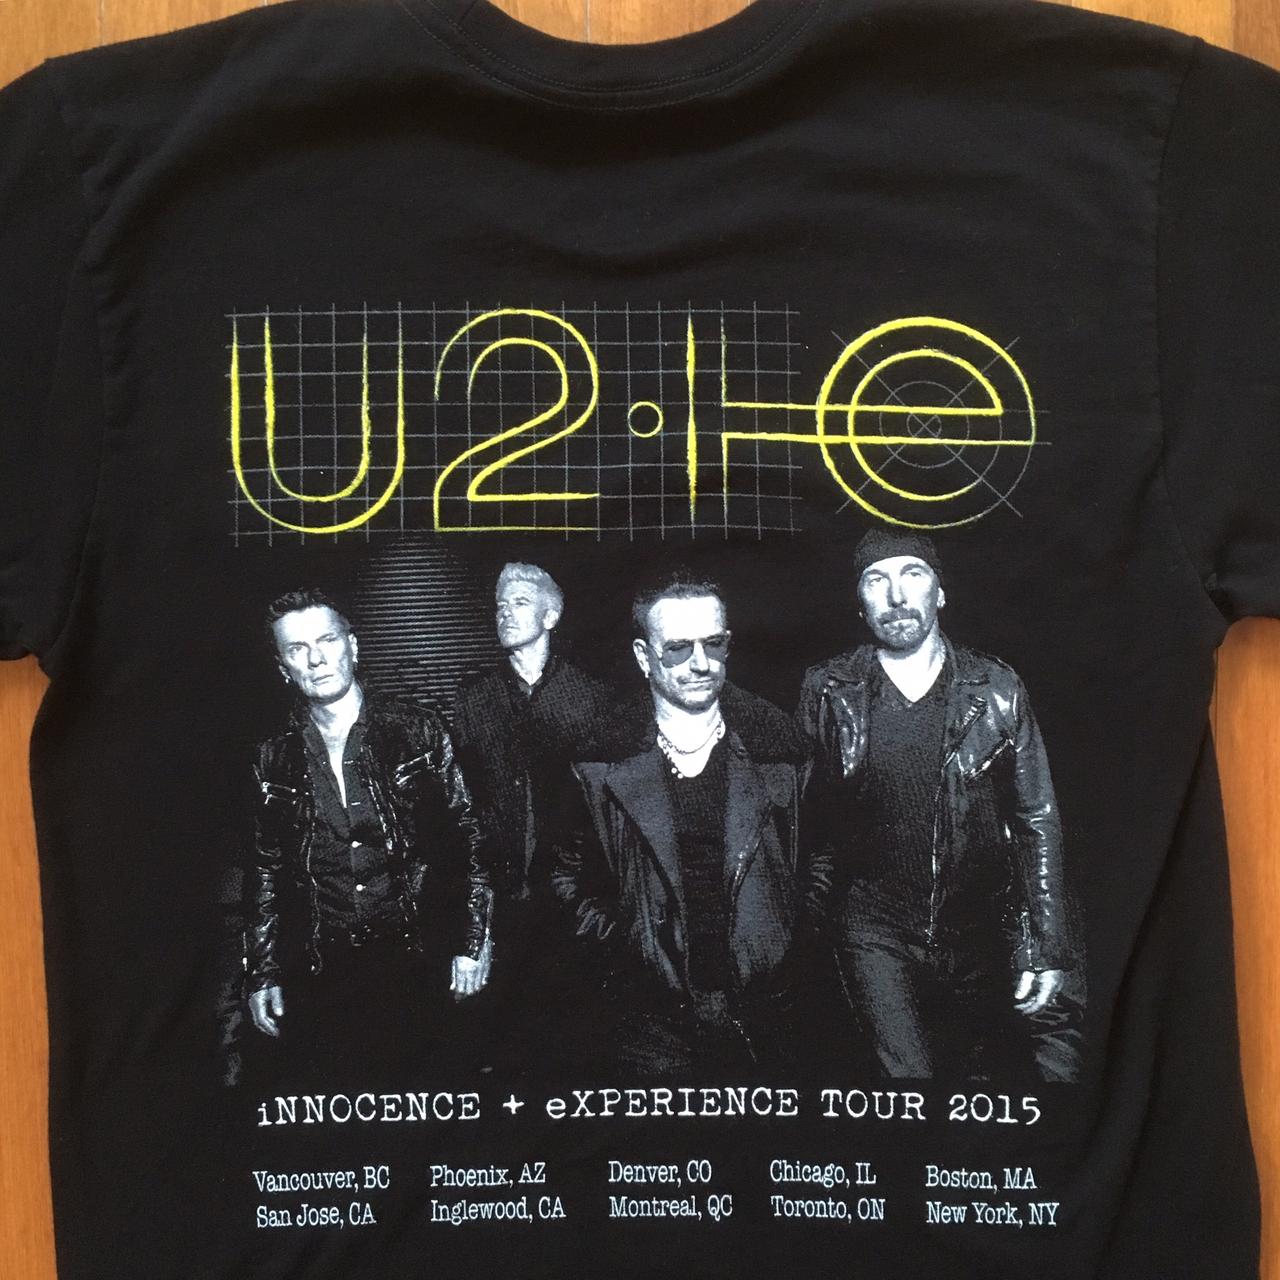 U2 – Experience + Innocence